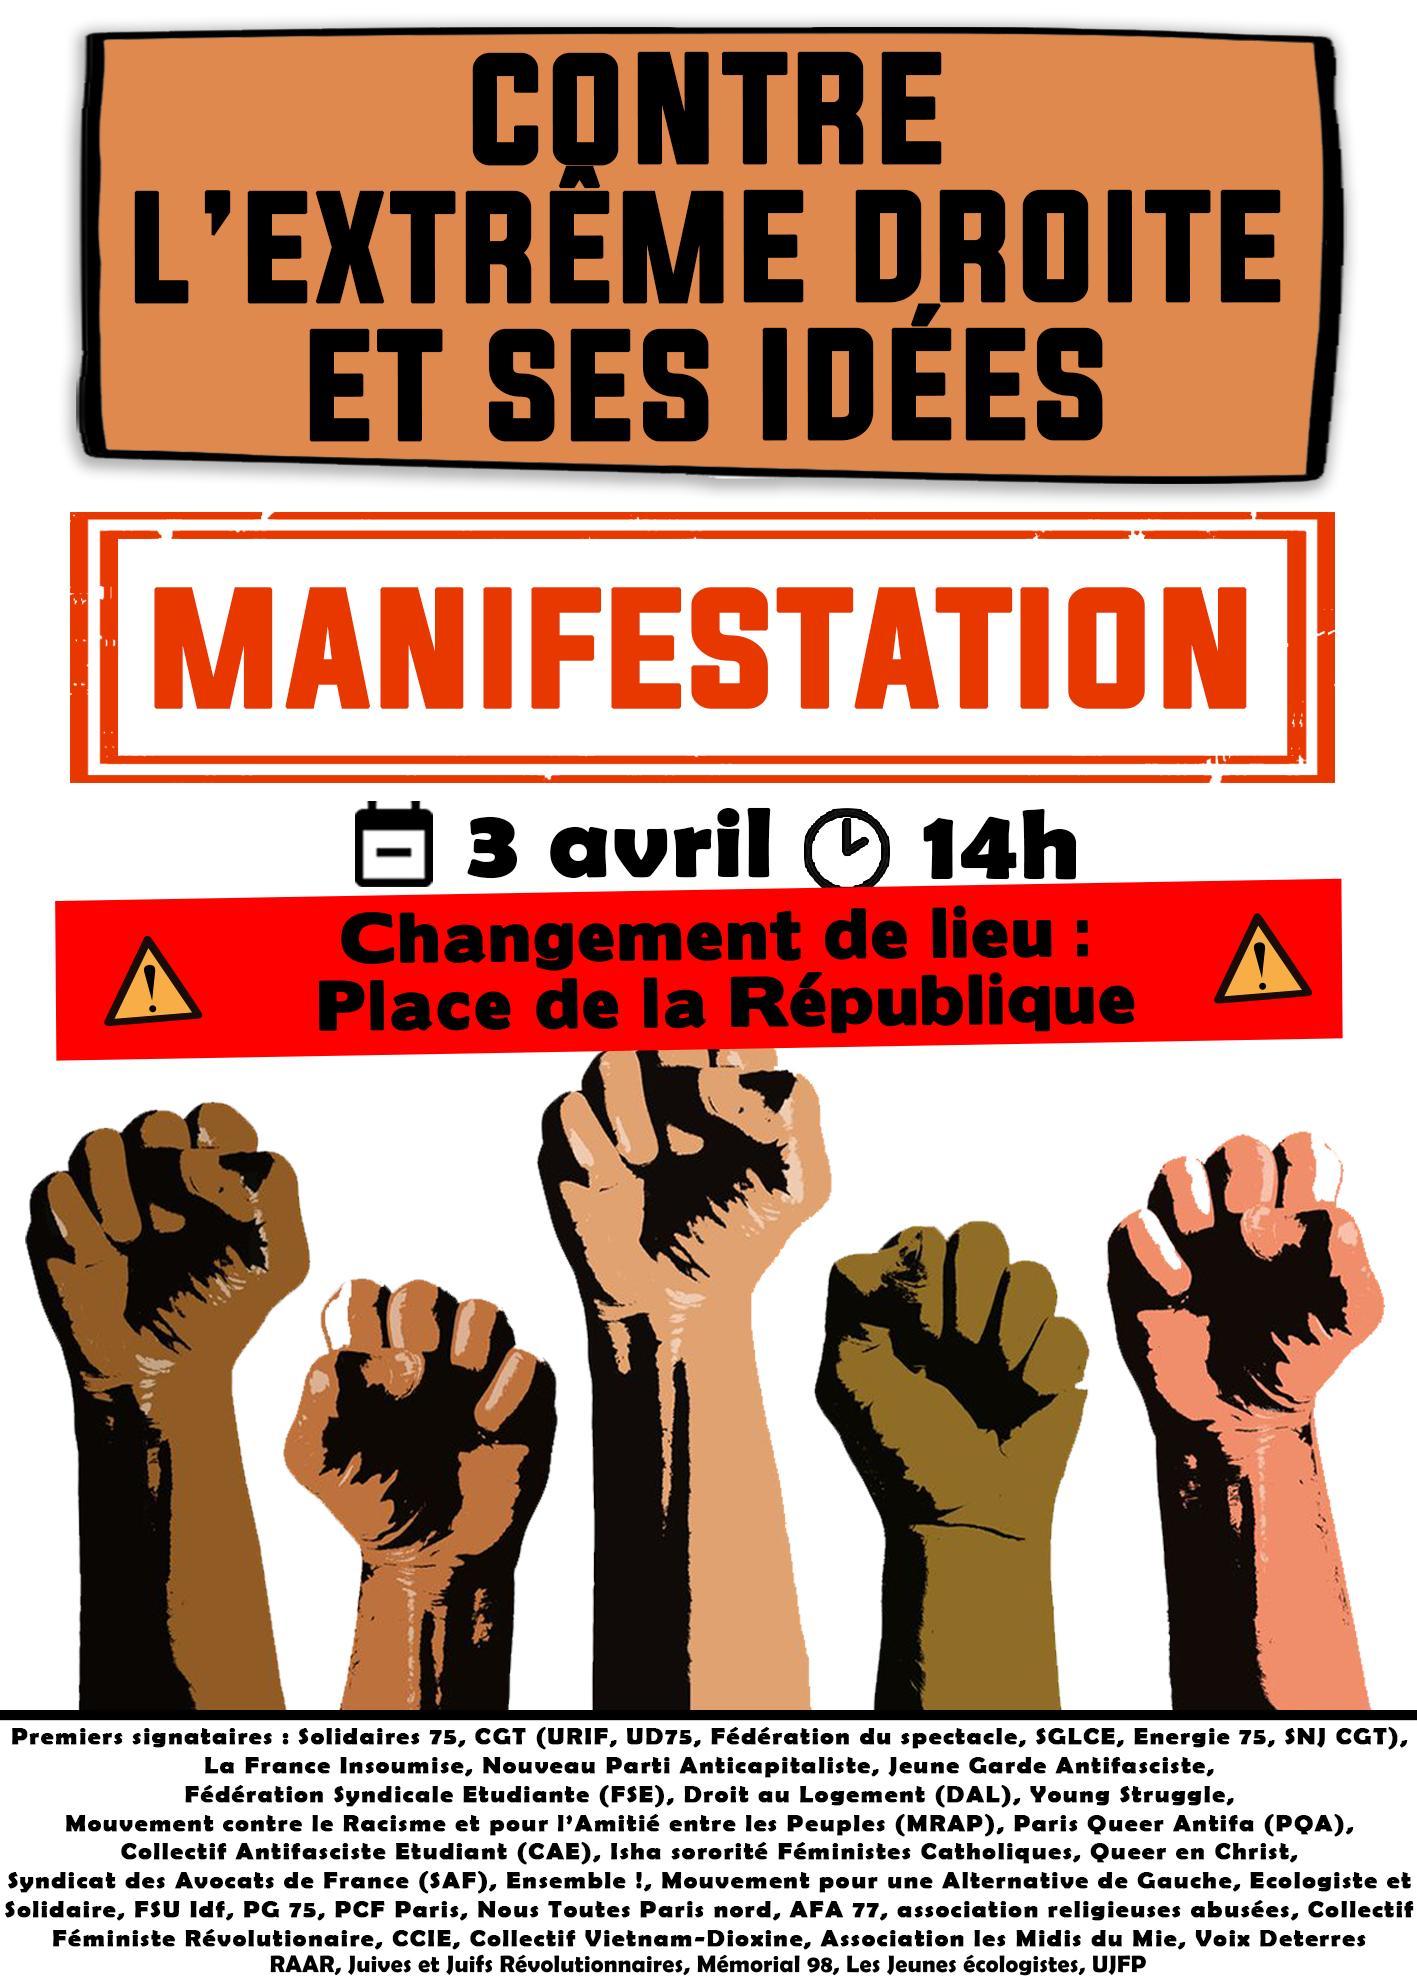 Pink bloc – Féministe, Antipatriarcal, Anticapitaliste et Antifasciste –  pour la Marche des Fiertés de Montpellier le 15 octobre à 16 h ! - Ficedl -  Affiches